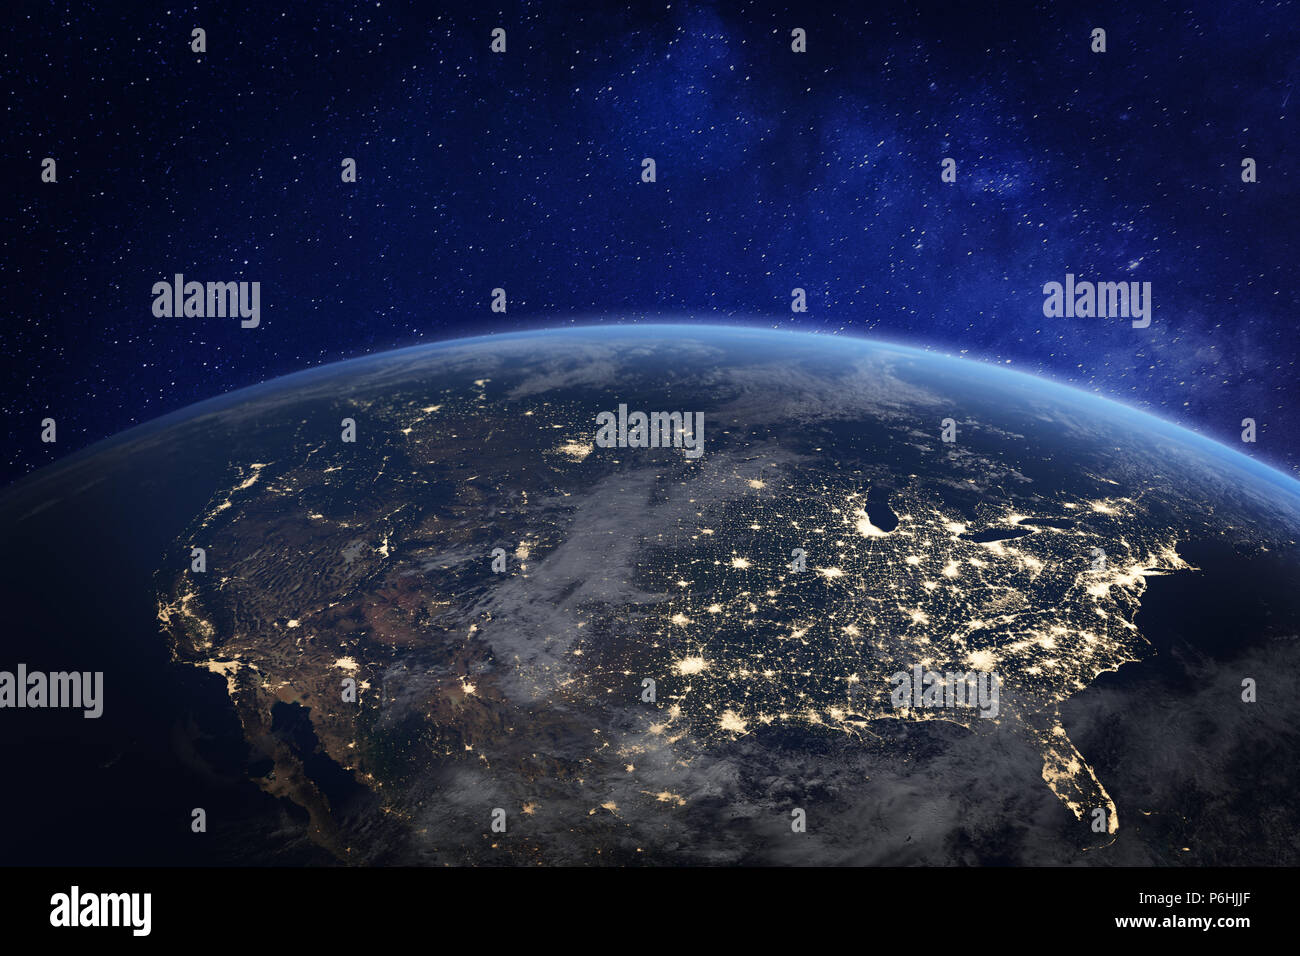 Nordamerika bei Nacht vom Weltraum aus gesehen mit den Lichtern der Stadt menschliche Tätigkeit in den Vereinigten Staaten (USA), Kanada und Mexiko, New York, Kalifornien, 3d-r Stockfoto